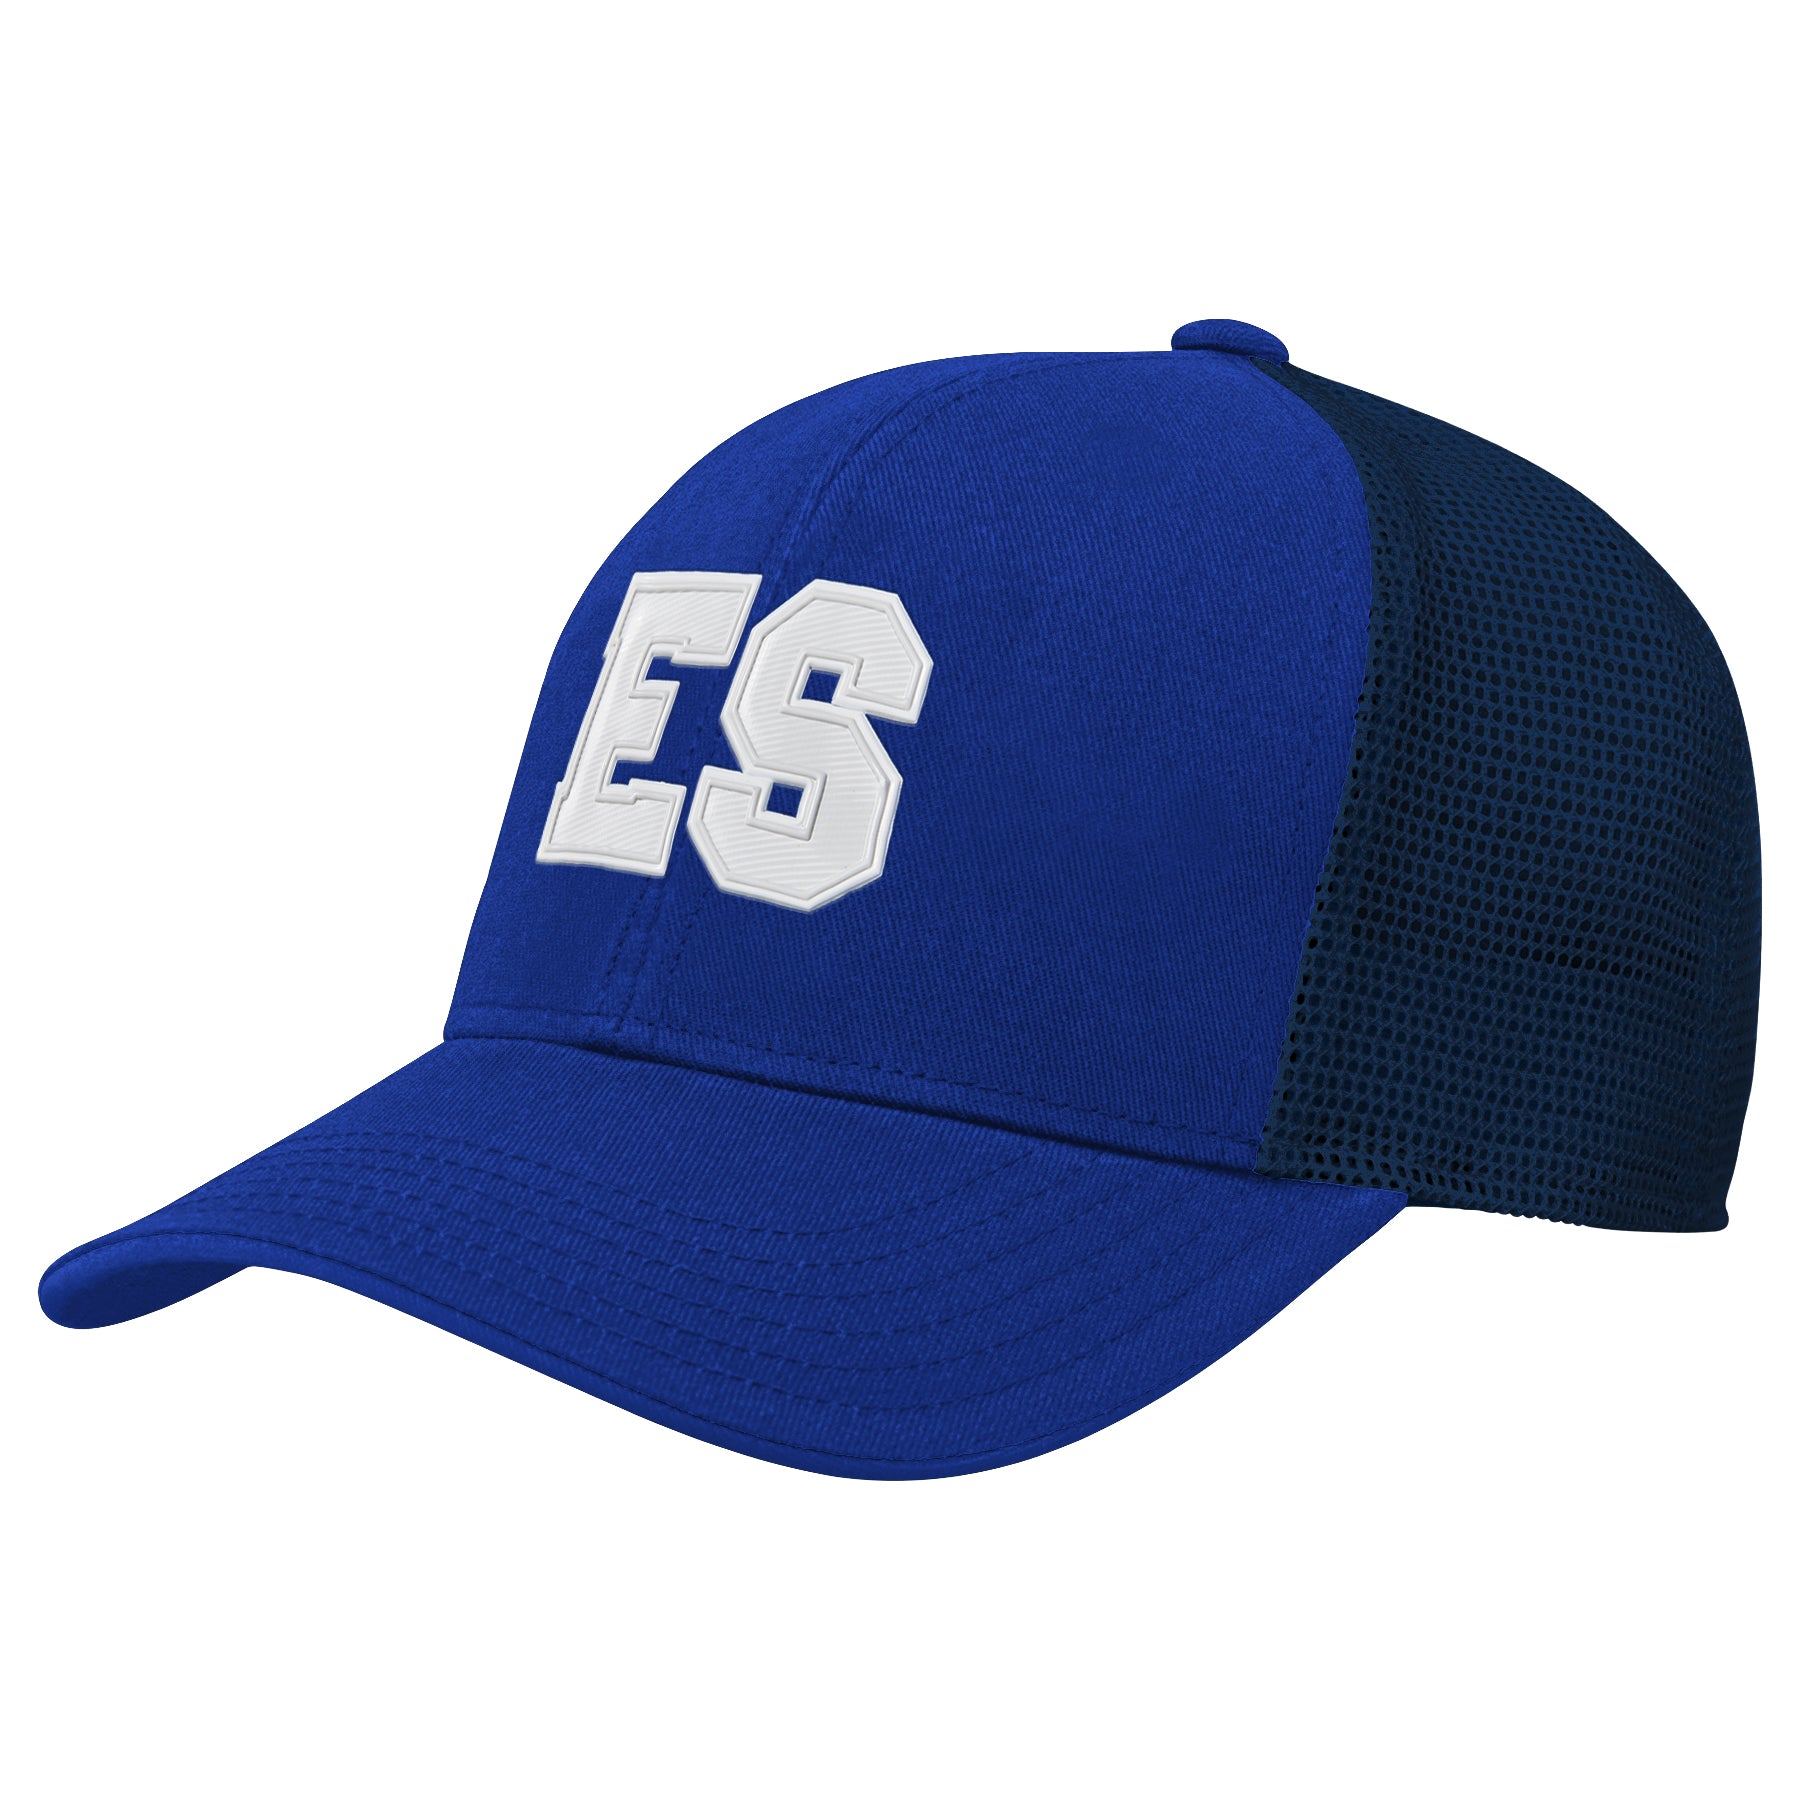 El Salvador Hat, Salvadorian Hat, Sun Hat, Adjustable, Cachuchas